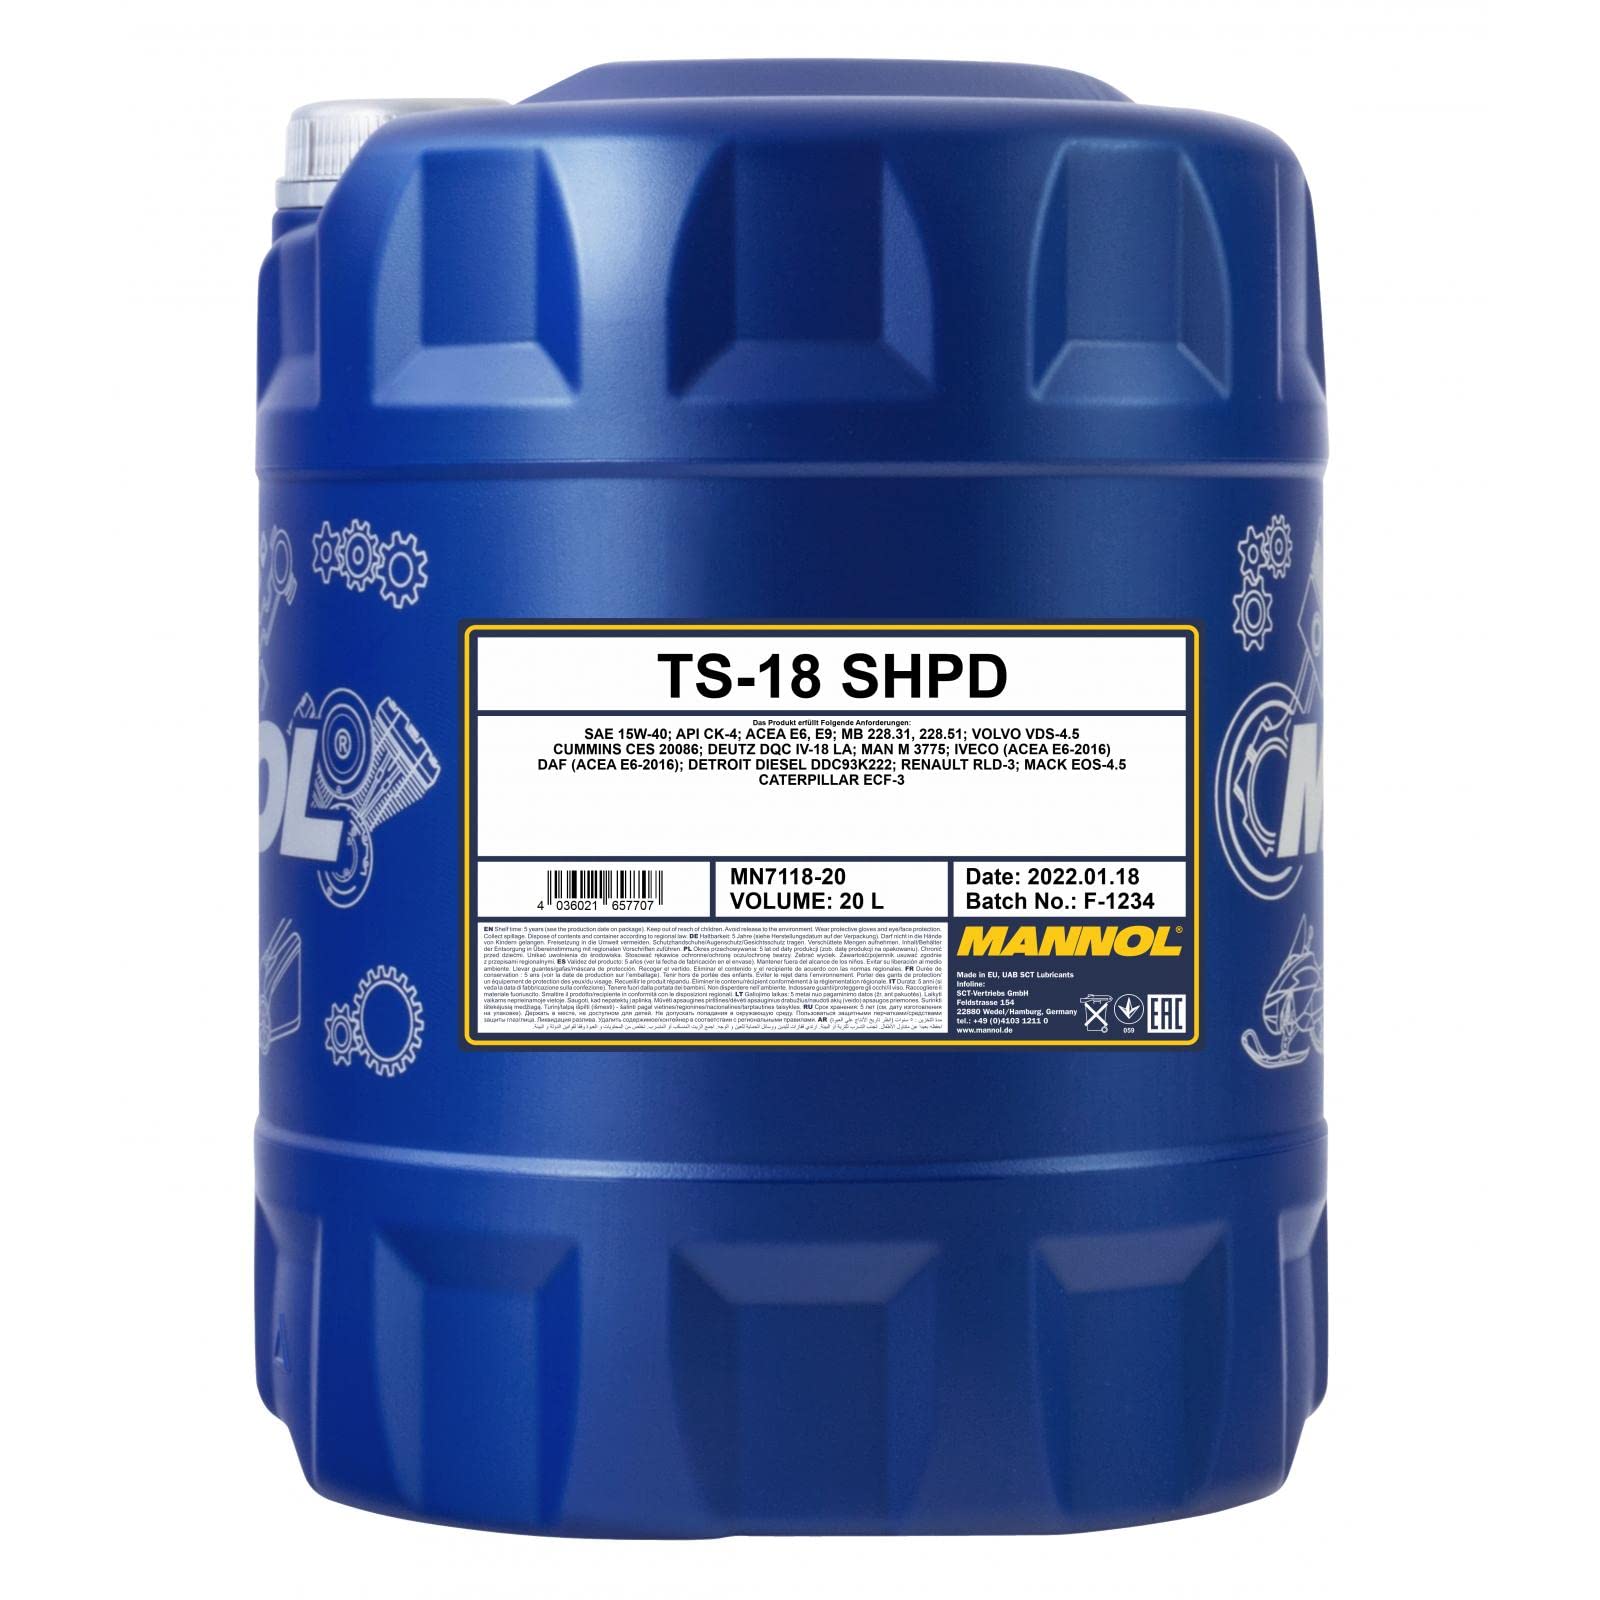 TS-18 SHPD 20 Liter von MANNOL